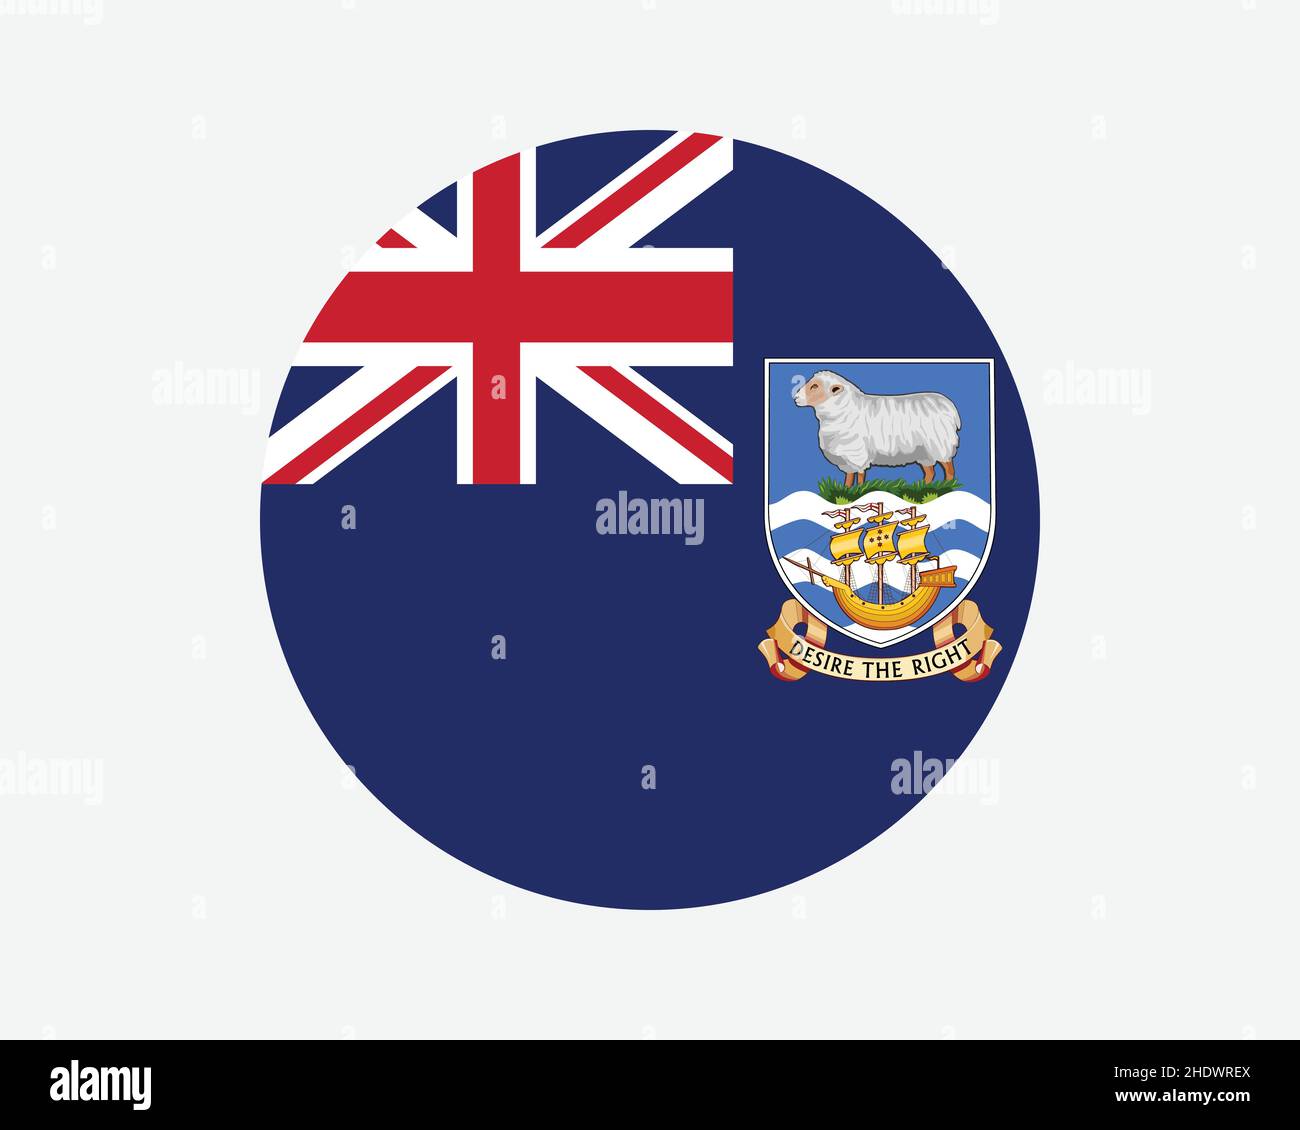 Falklandinseln Runde Flagge. Falkland-Inseln-Kreisflagge. Bannerförmiges Knopfbanner Im Britischen Überseegebiet. EPS-Vektorgrafik. Stock Vektor